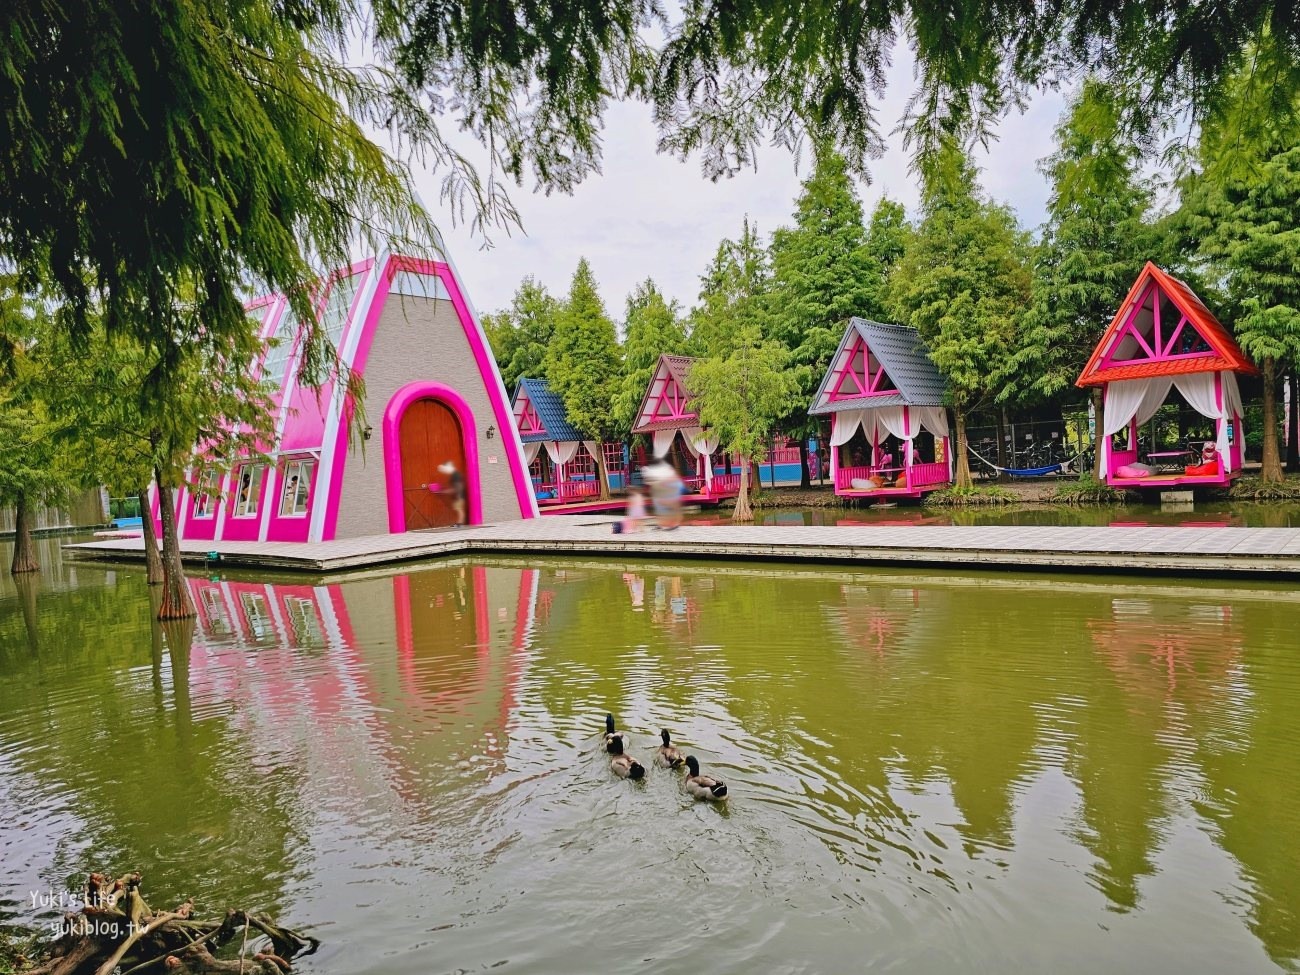 雲林古坑粉紅泡泡(珍粉紅城堡)粉紅色水上教堂、落羽松水上發呆亭景觀餐廳